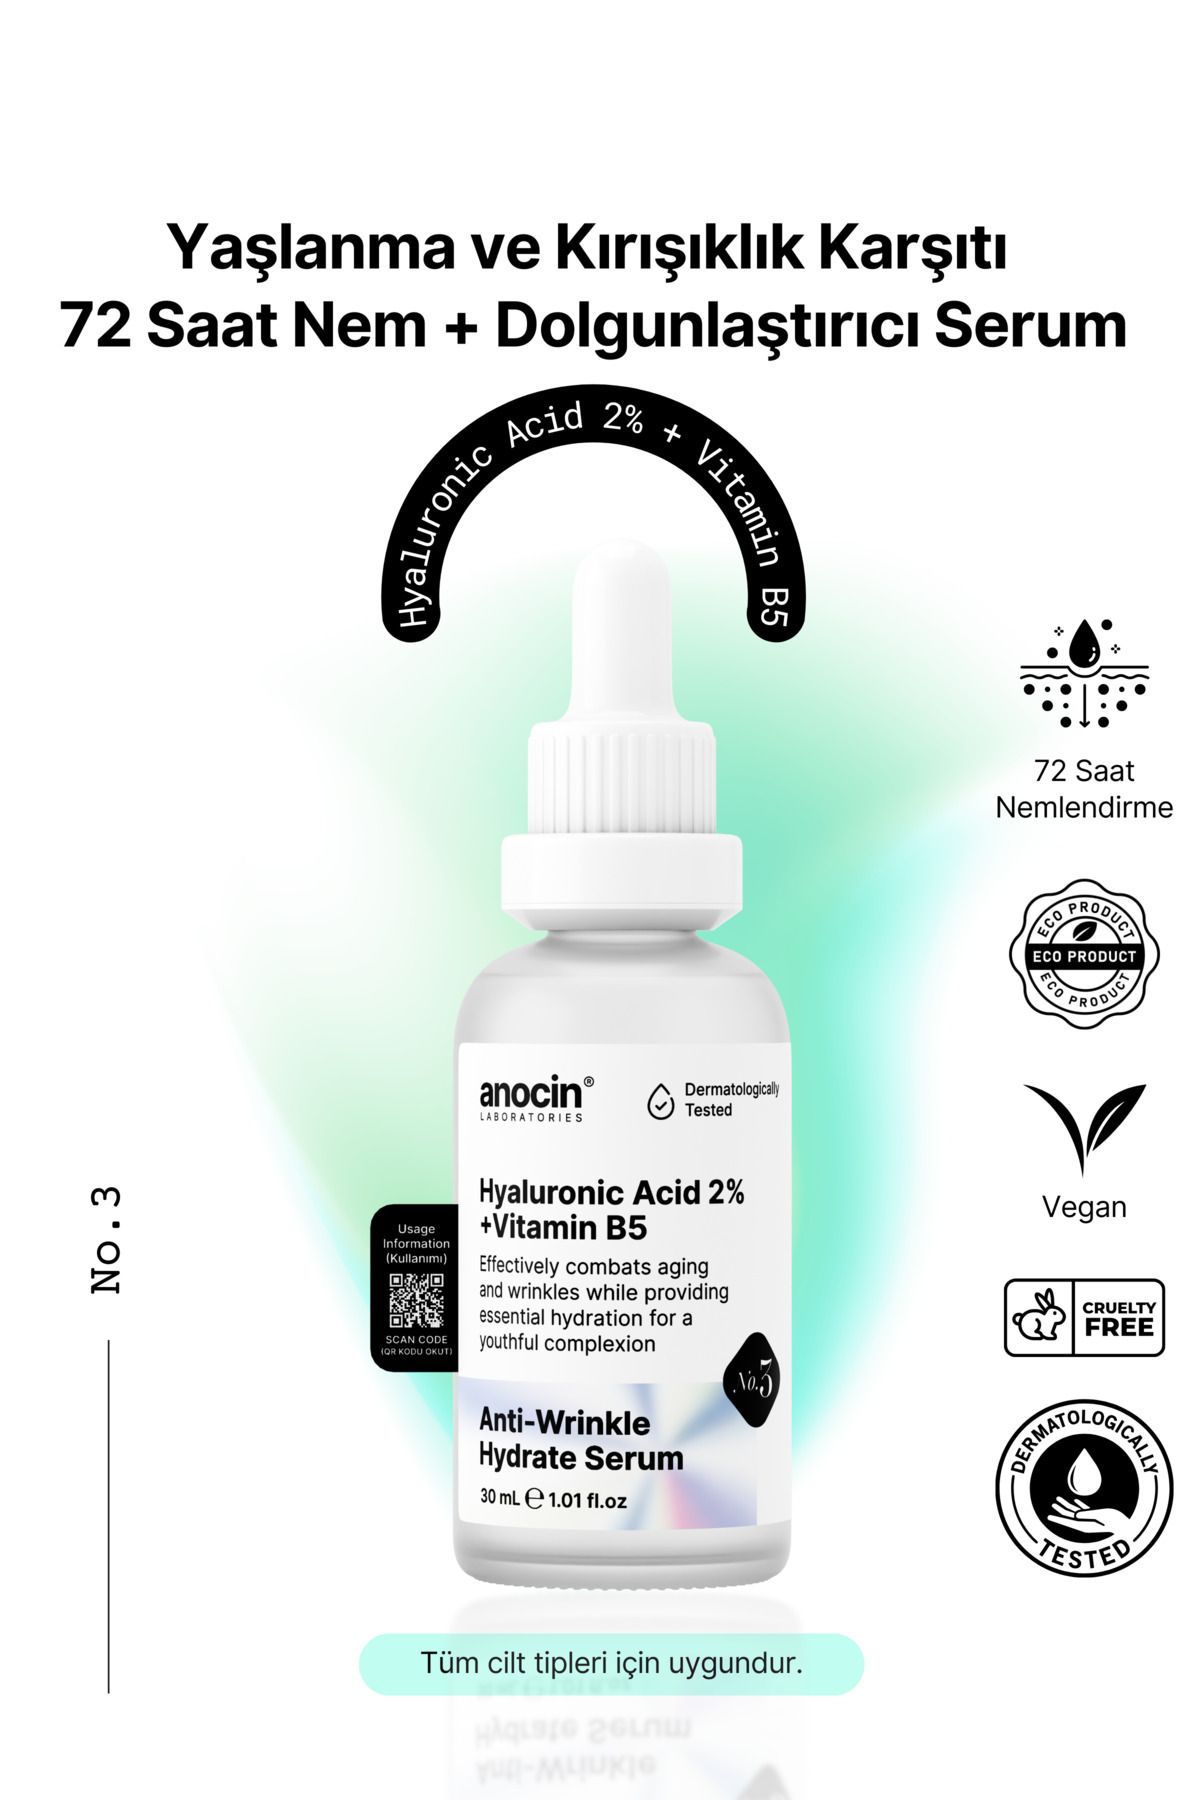 anocin Hyaluronic Acid 2% + Vitamin B5 Yaşlanma ve Kırışıklık karşıtı, 72 saat Nem ve Dolgunlaştırıcı serum